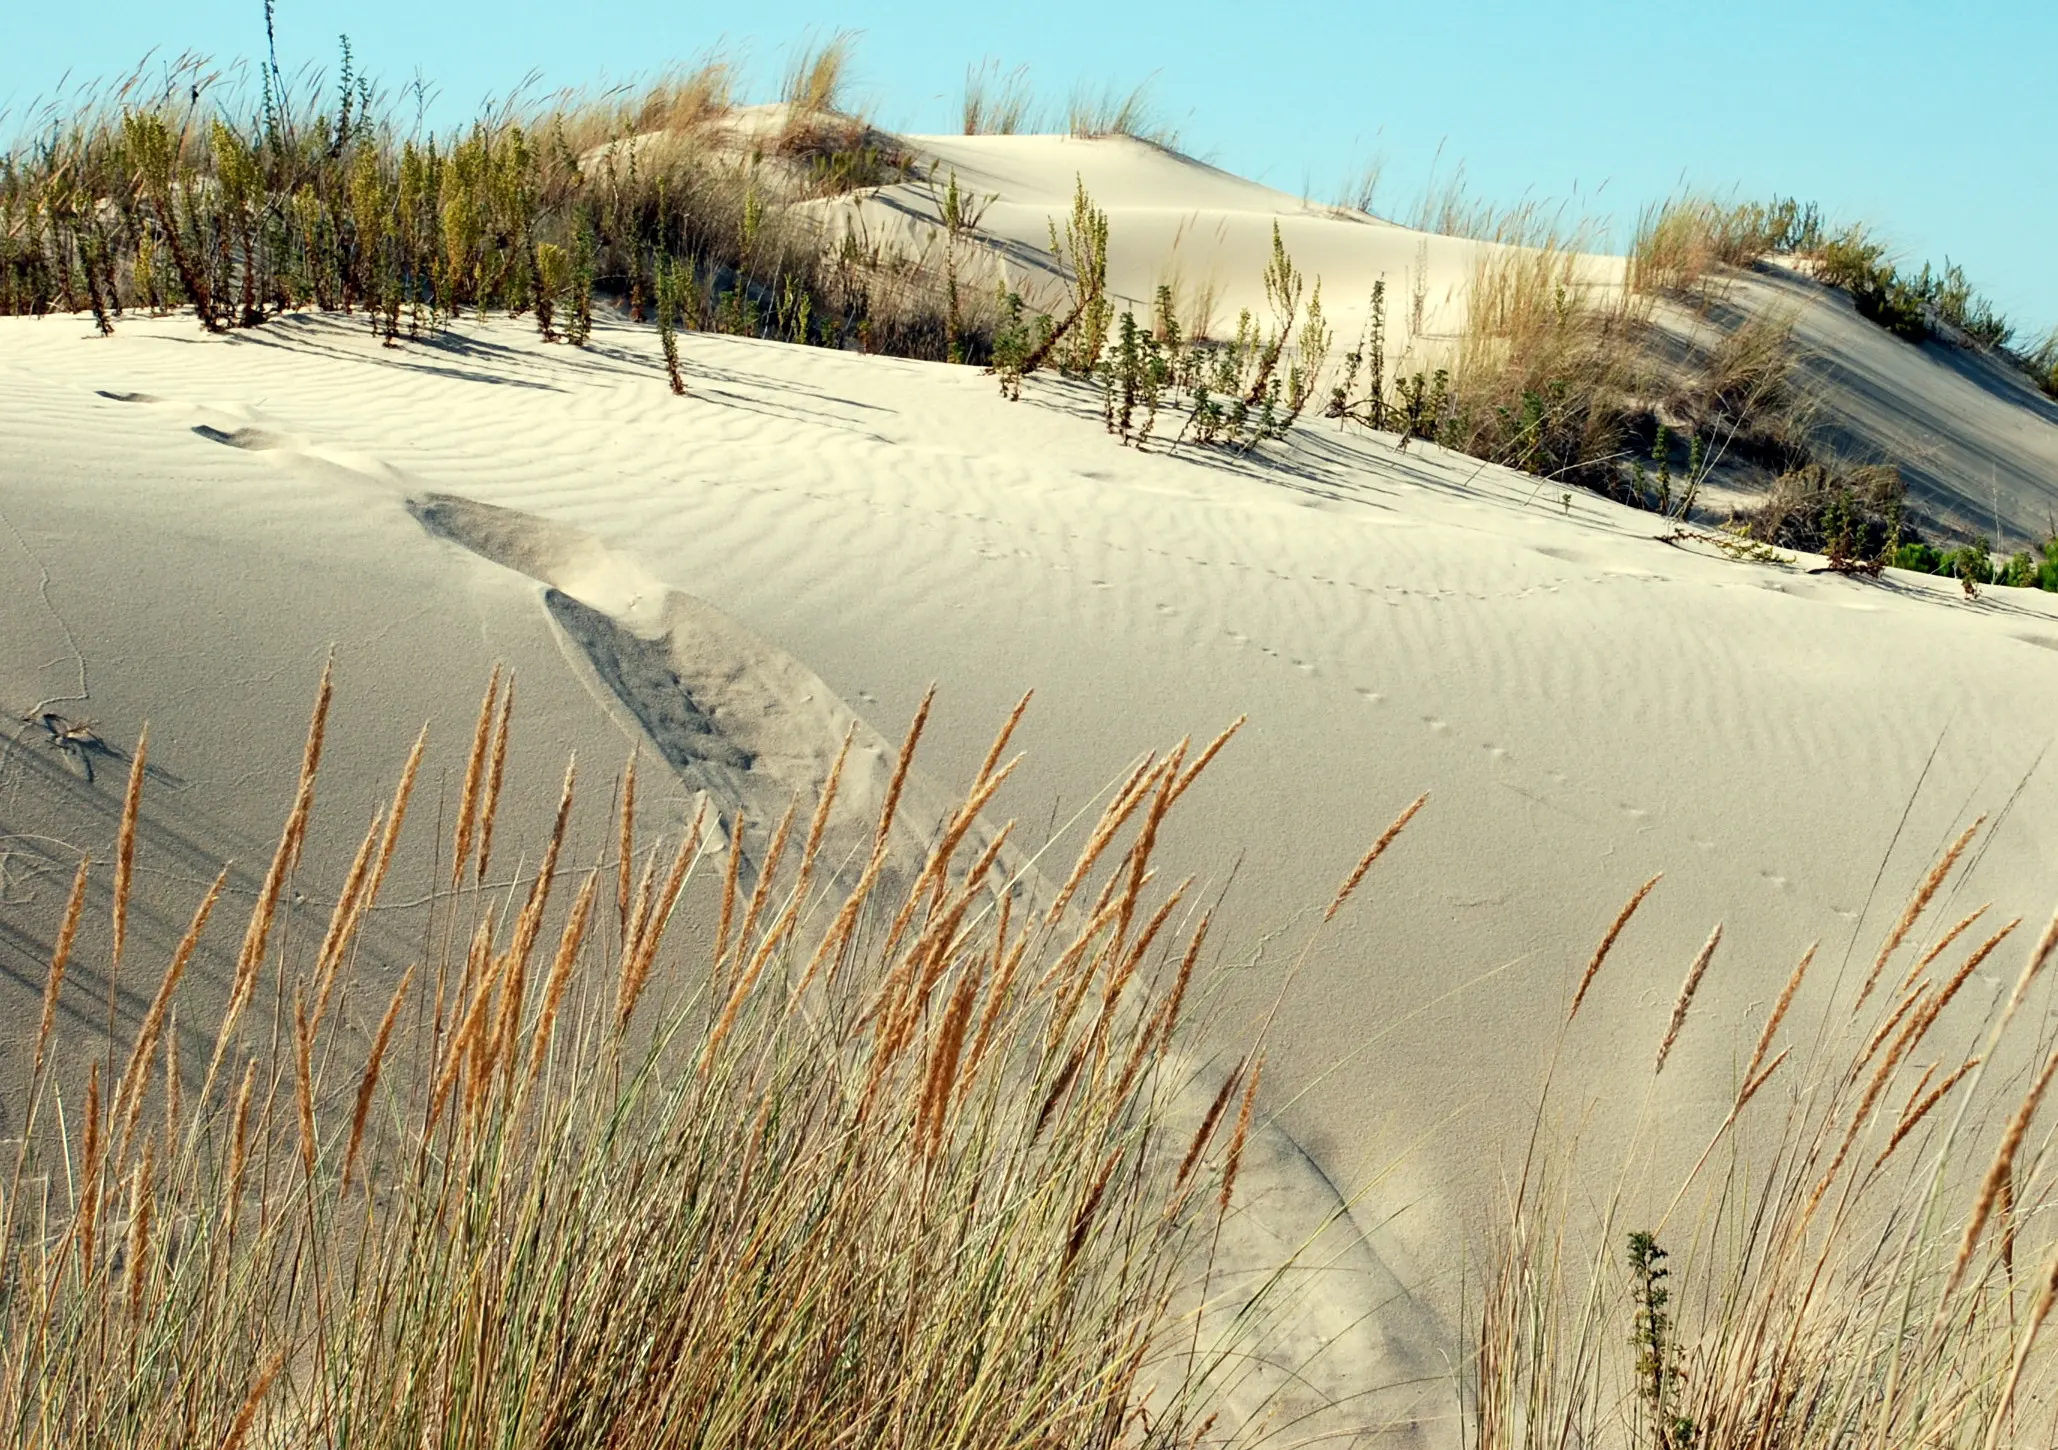 Doñana dunes in Spain